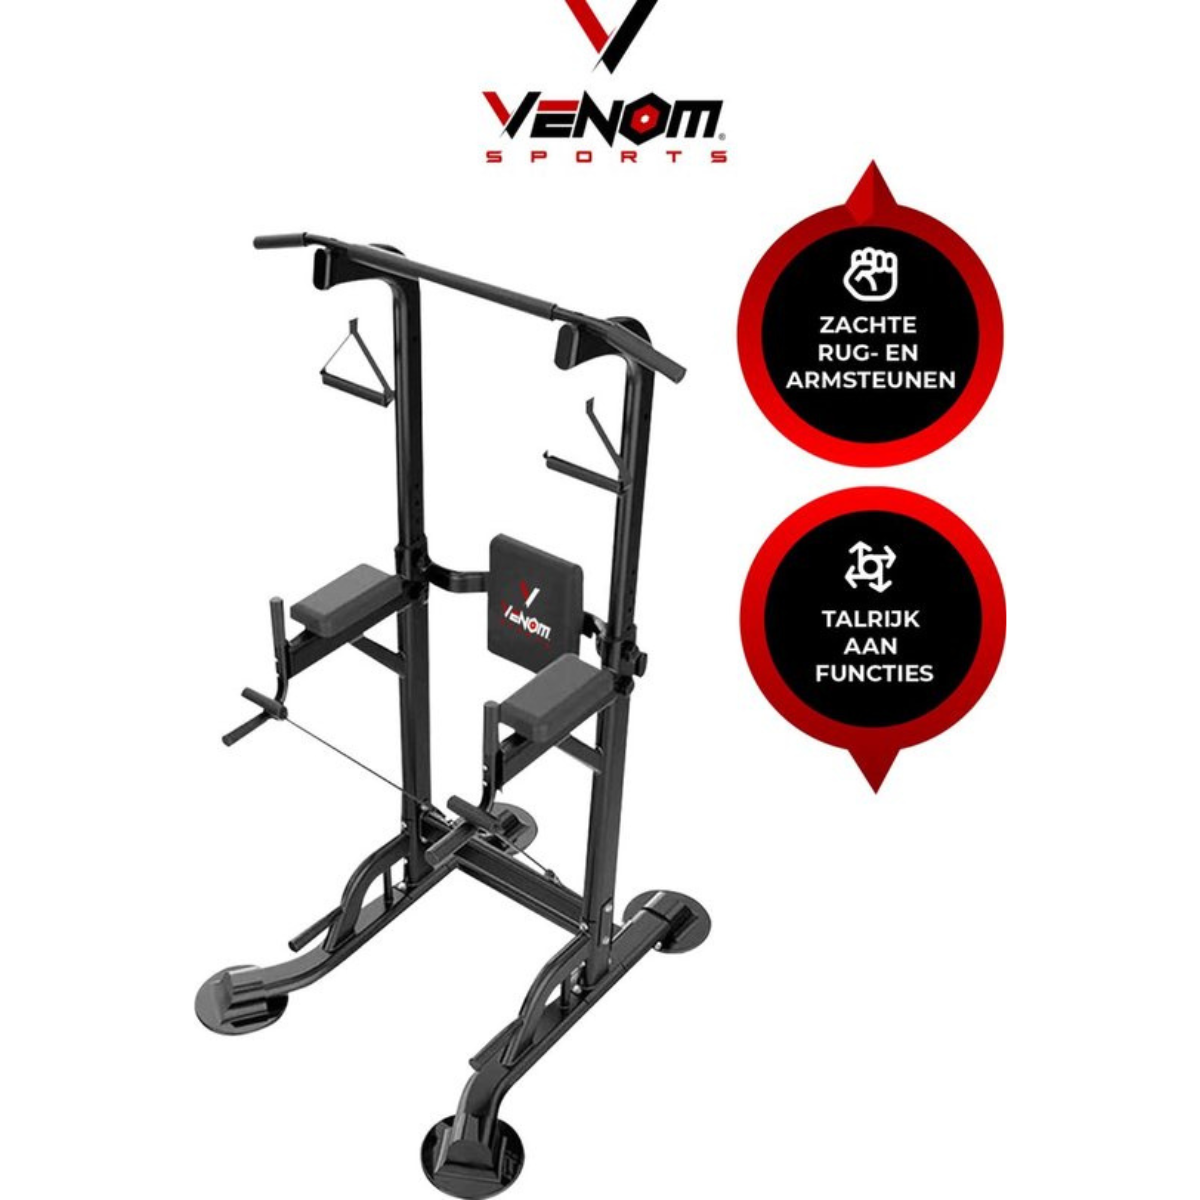 Nancy's Venom Sports Multifunctioneel Trainingsrek - Krachtstation - Power Tower met Pull Up Bar - Fitness Apparaat - In hoogte verstelbaar